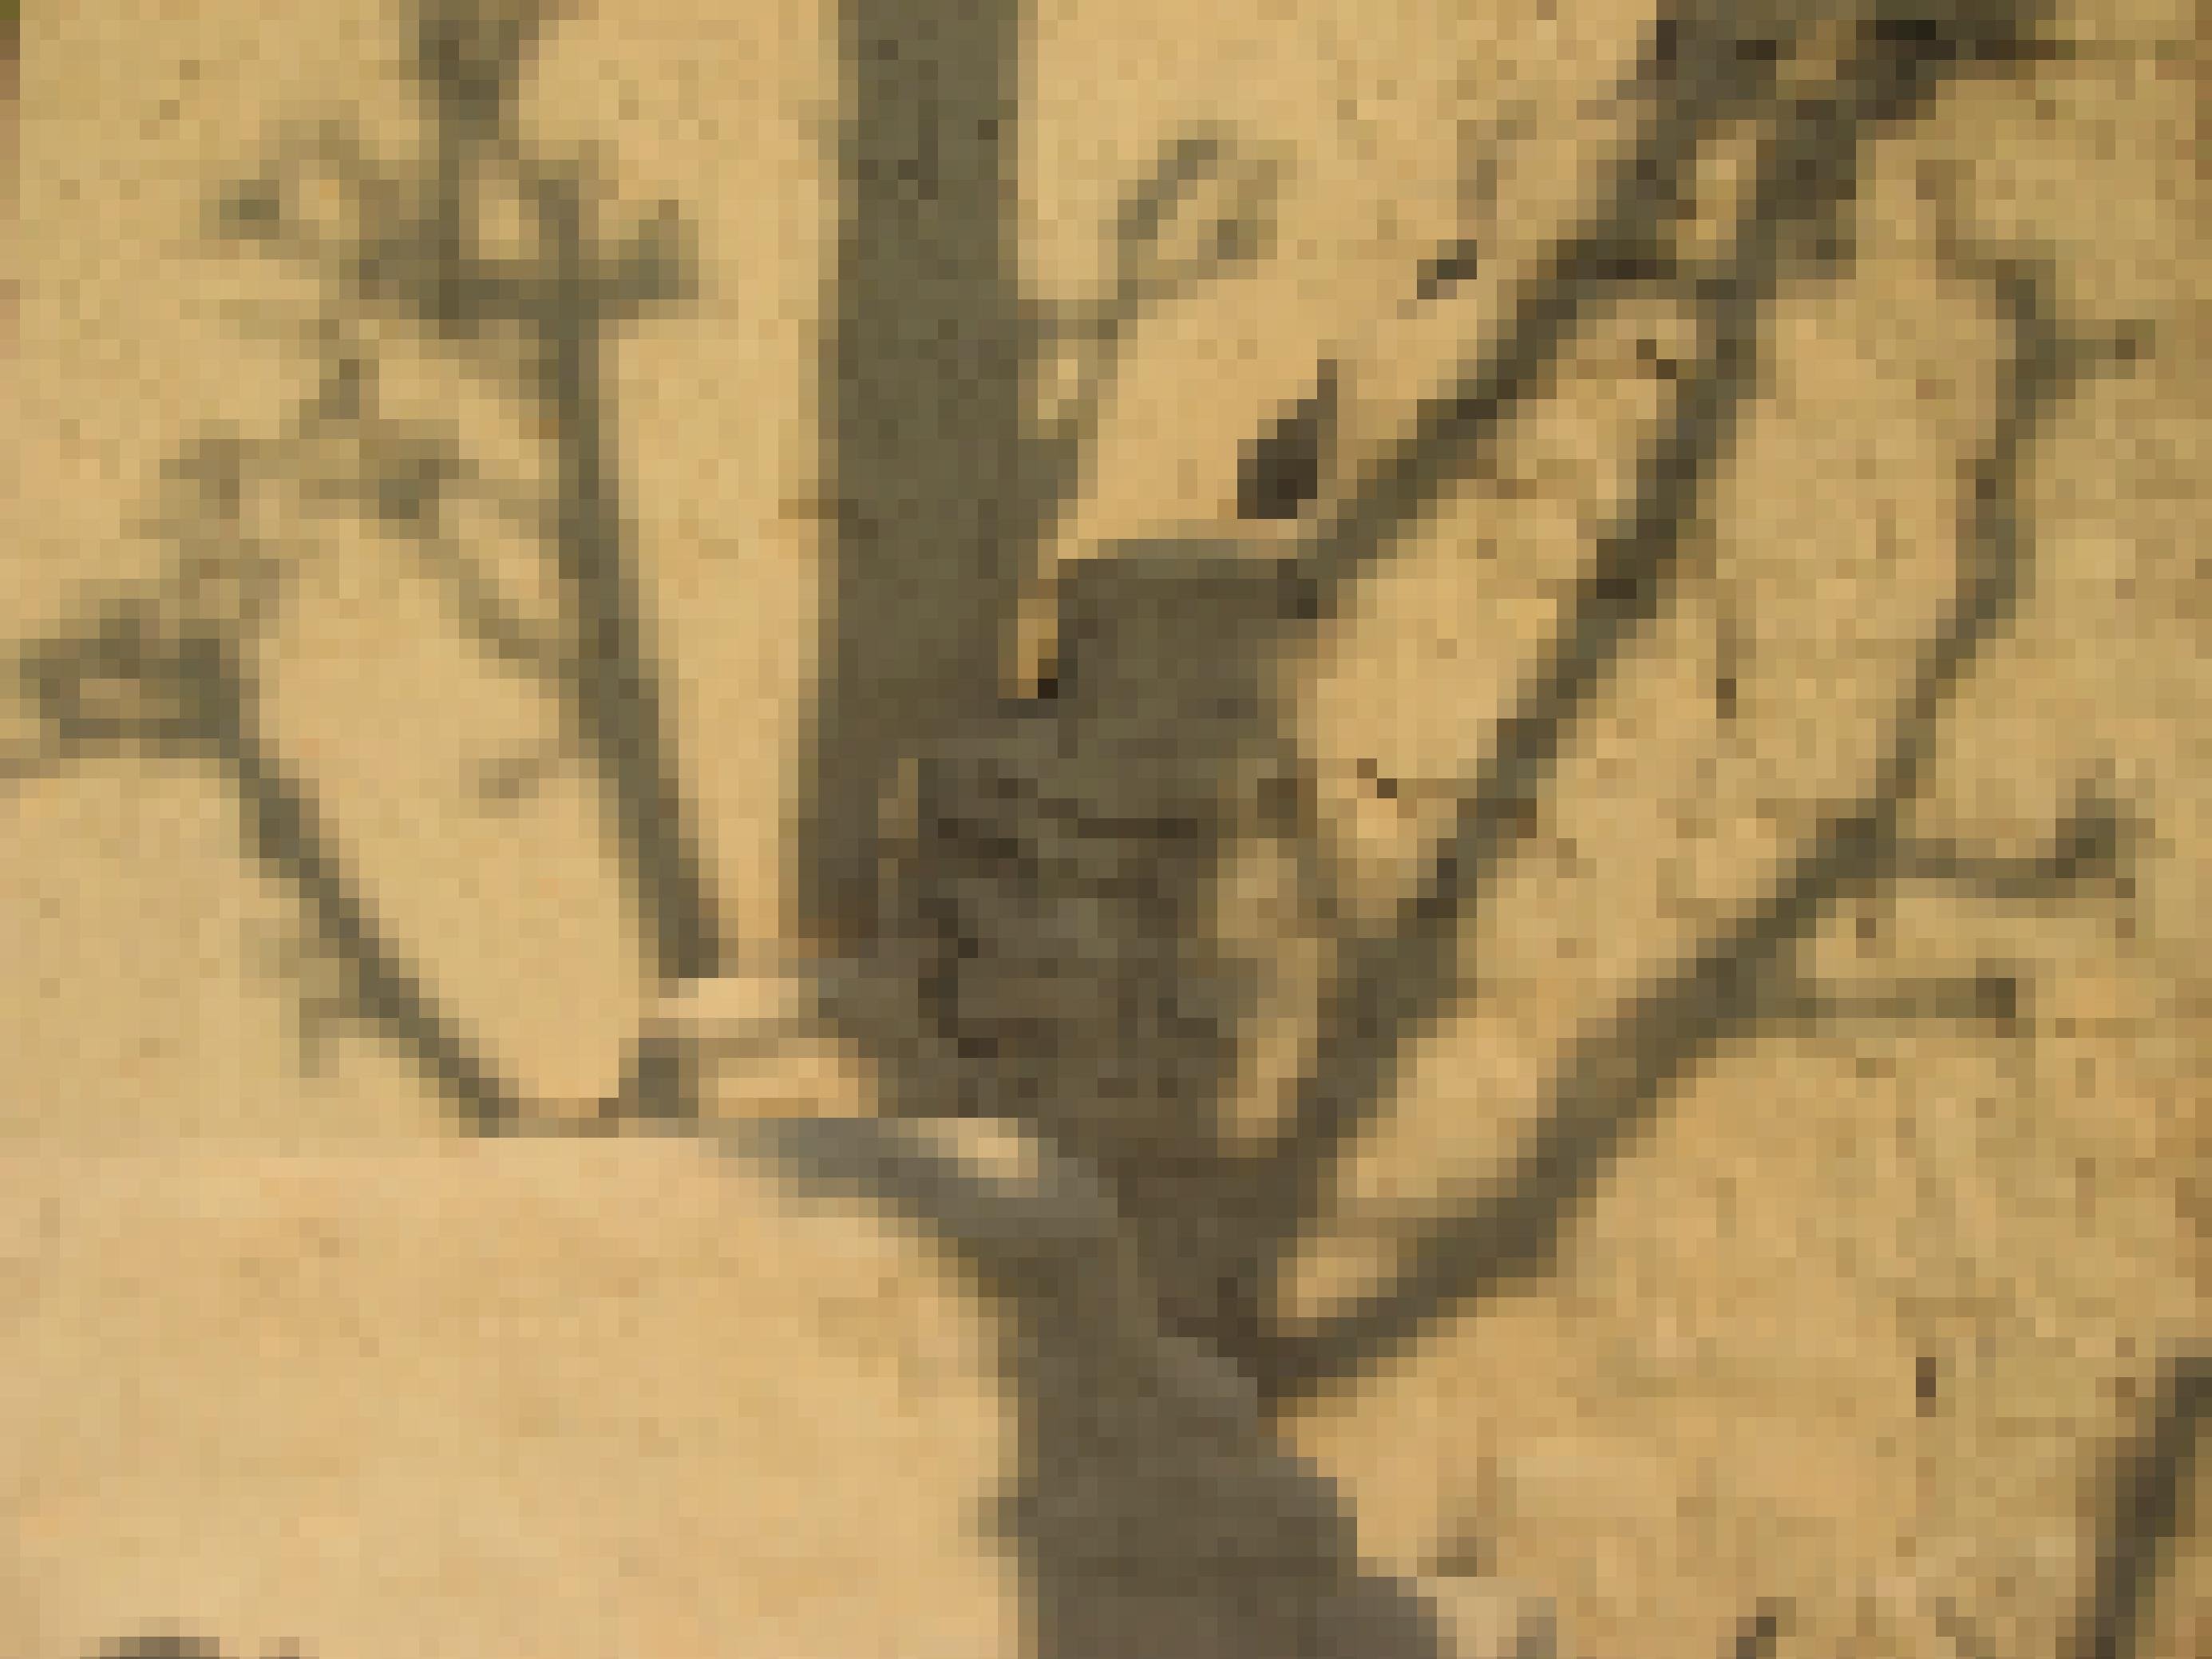 Auf der vor Trockenheit rissigen Lehmwand eines Hauses ist der Schatten eines entlaubten Baumes zu sehen.